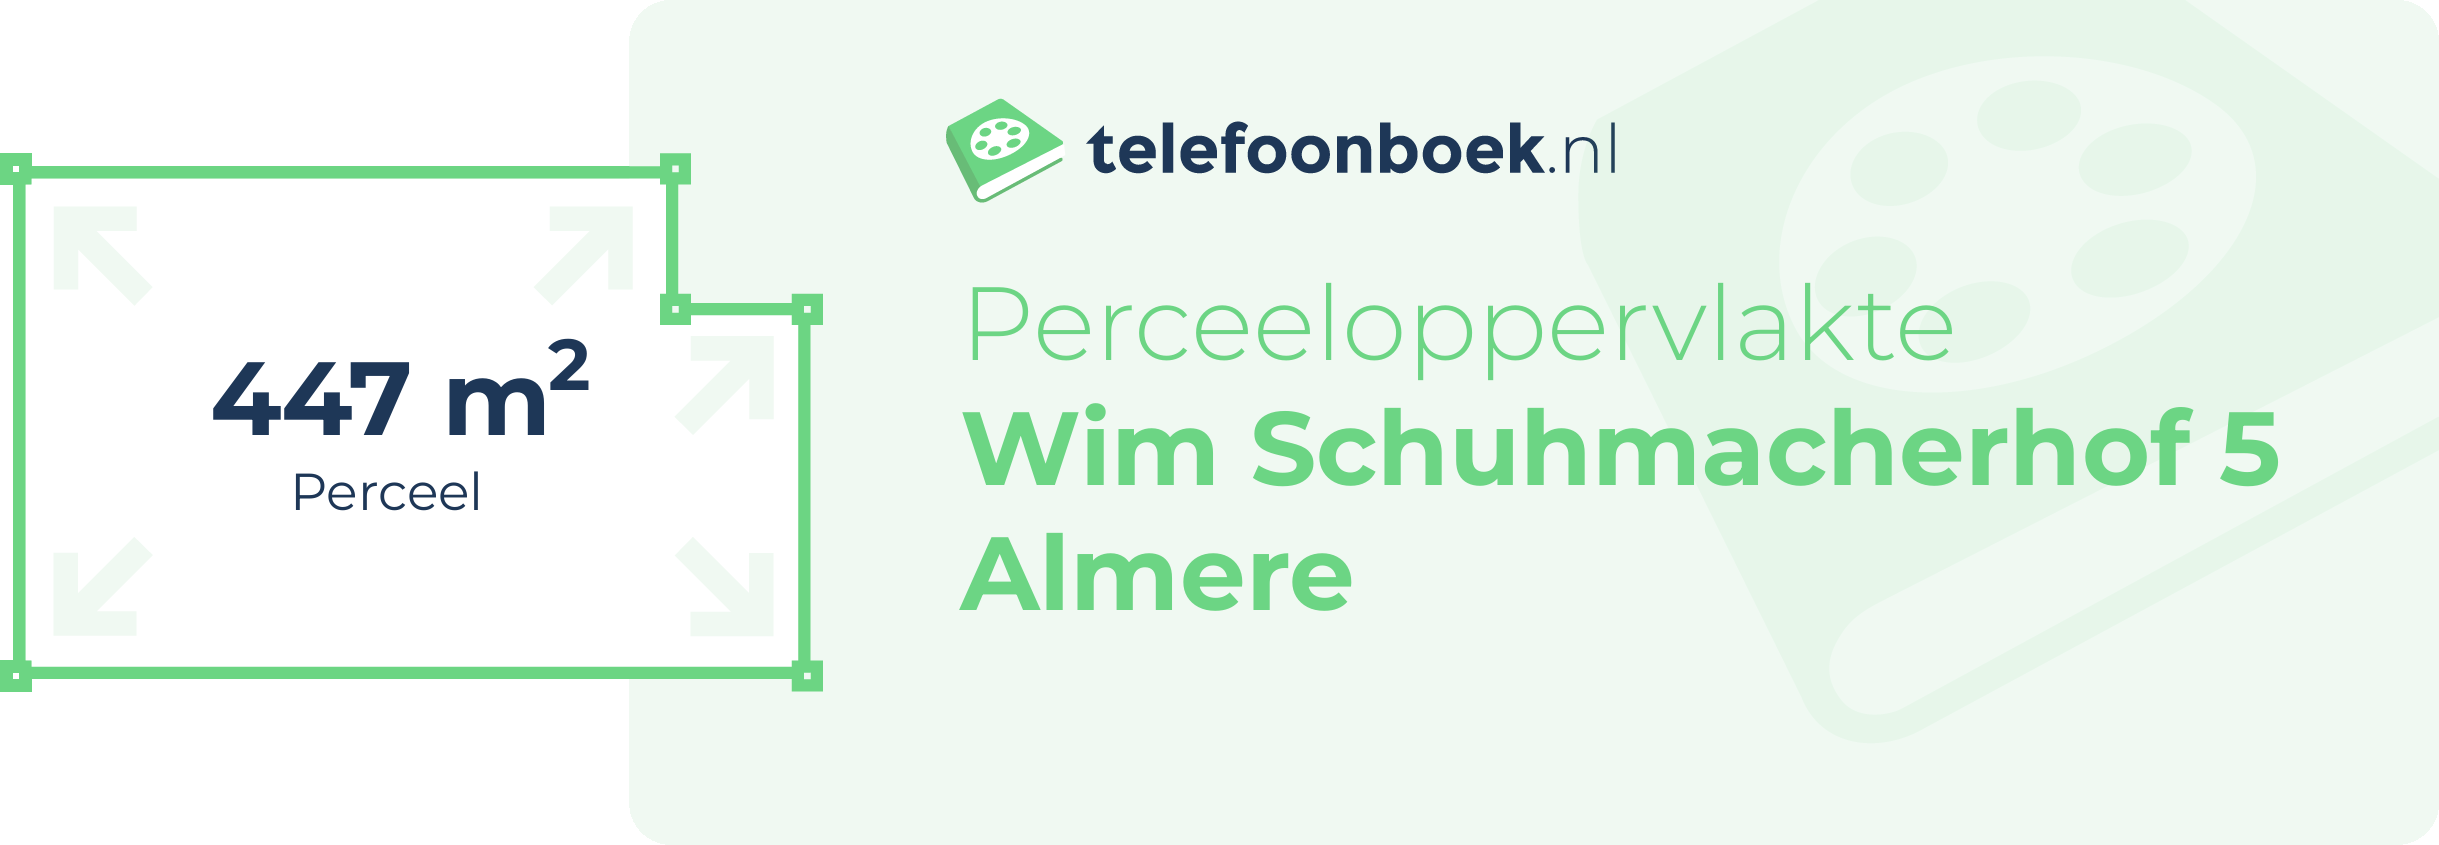 Perceeloppervlakte Wim Schuhmacherhof 5 Almere